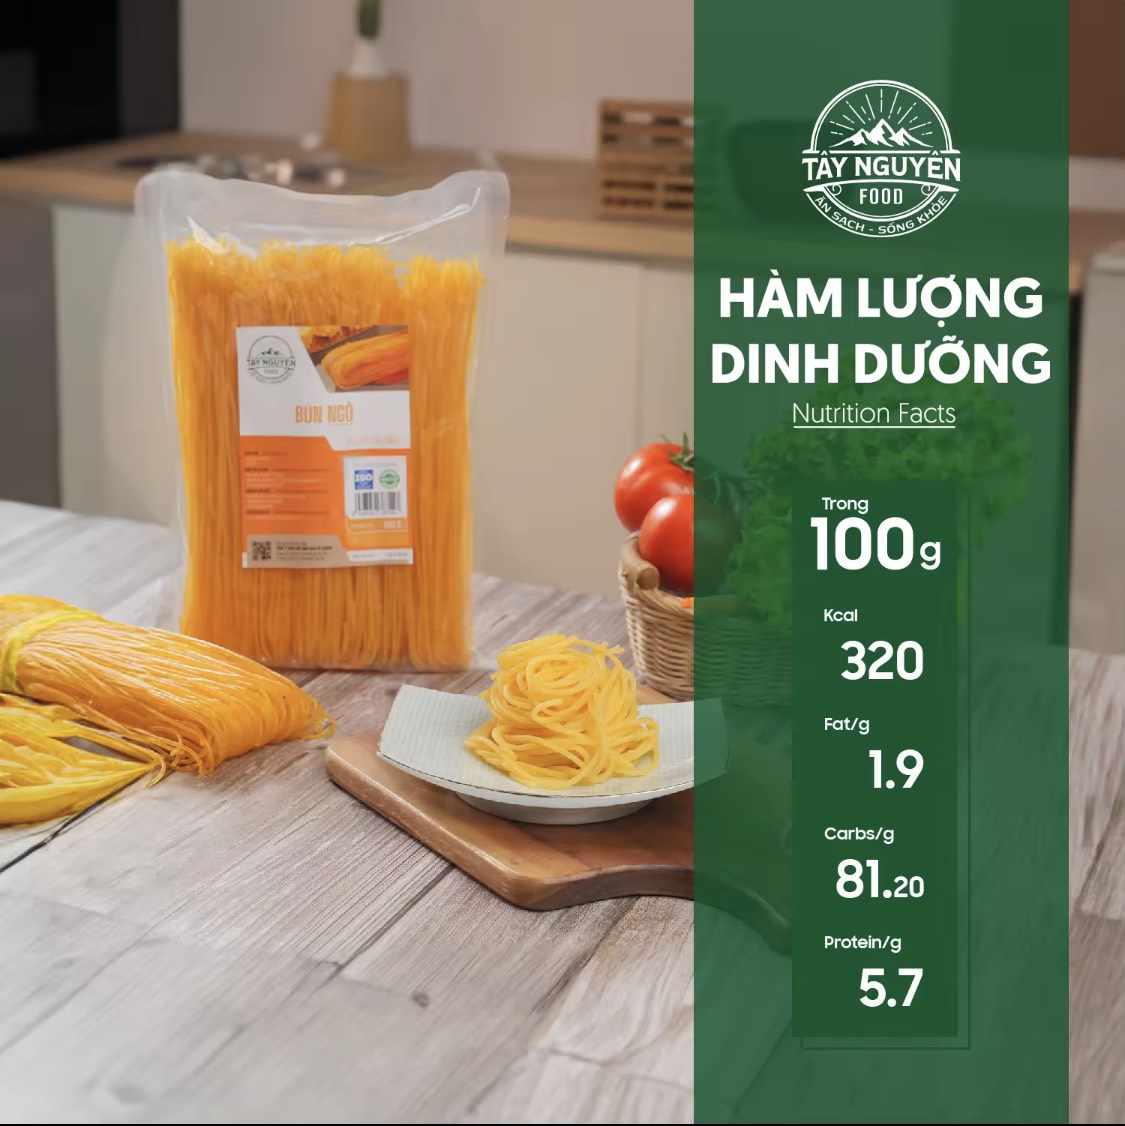 Bún ngô Cao Bằng healthy Tây Nguyên Food - Việt Nam 500g